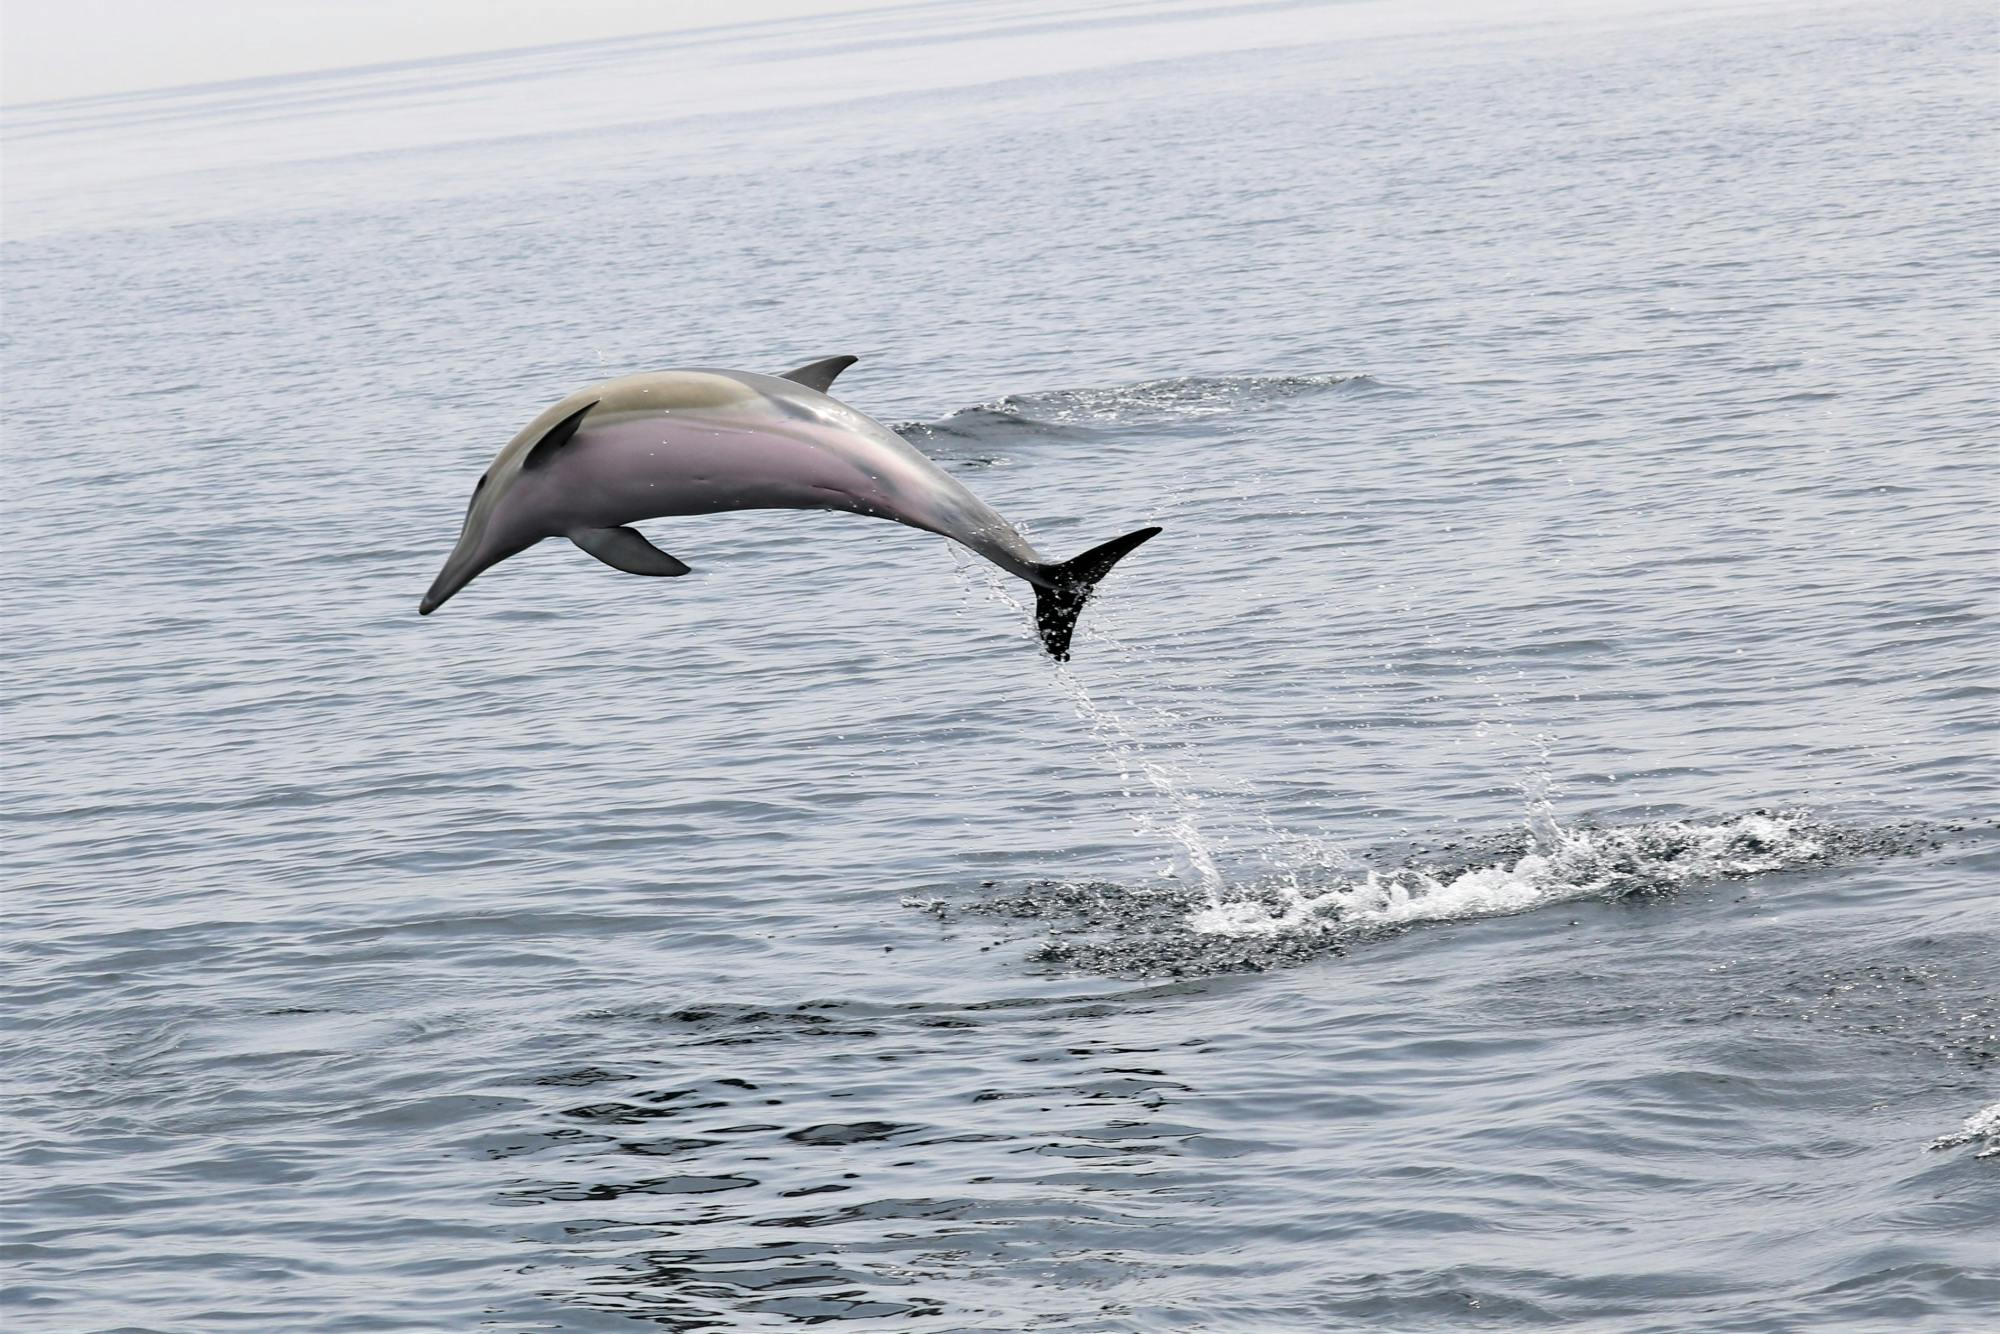 Experiencia de avistamiento de delfines y ballenas en Portugal.